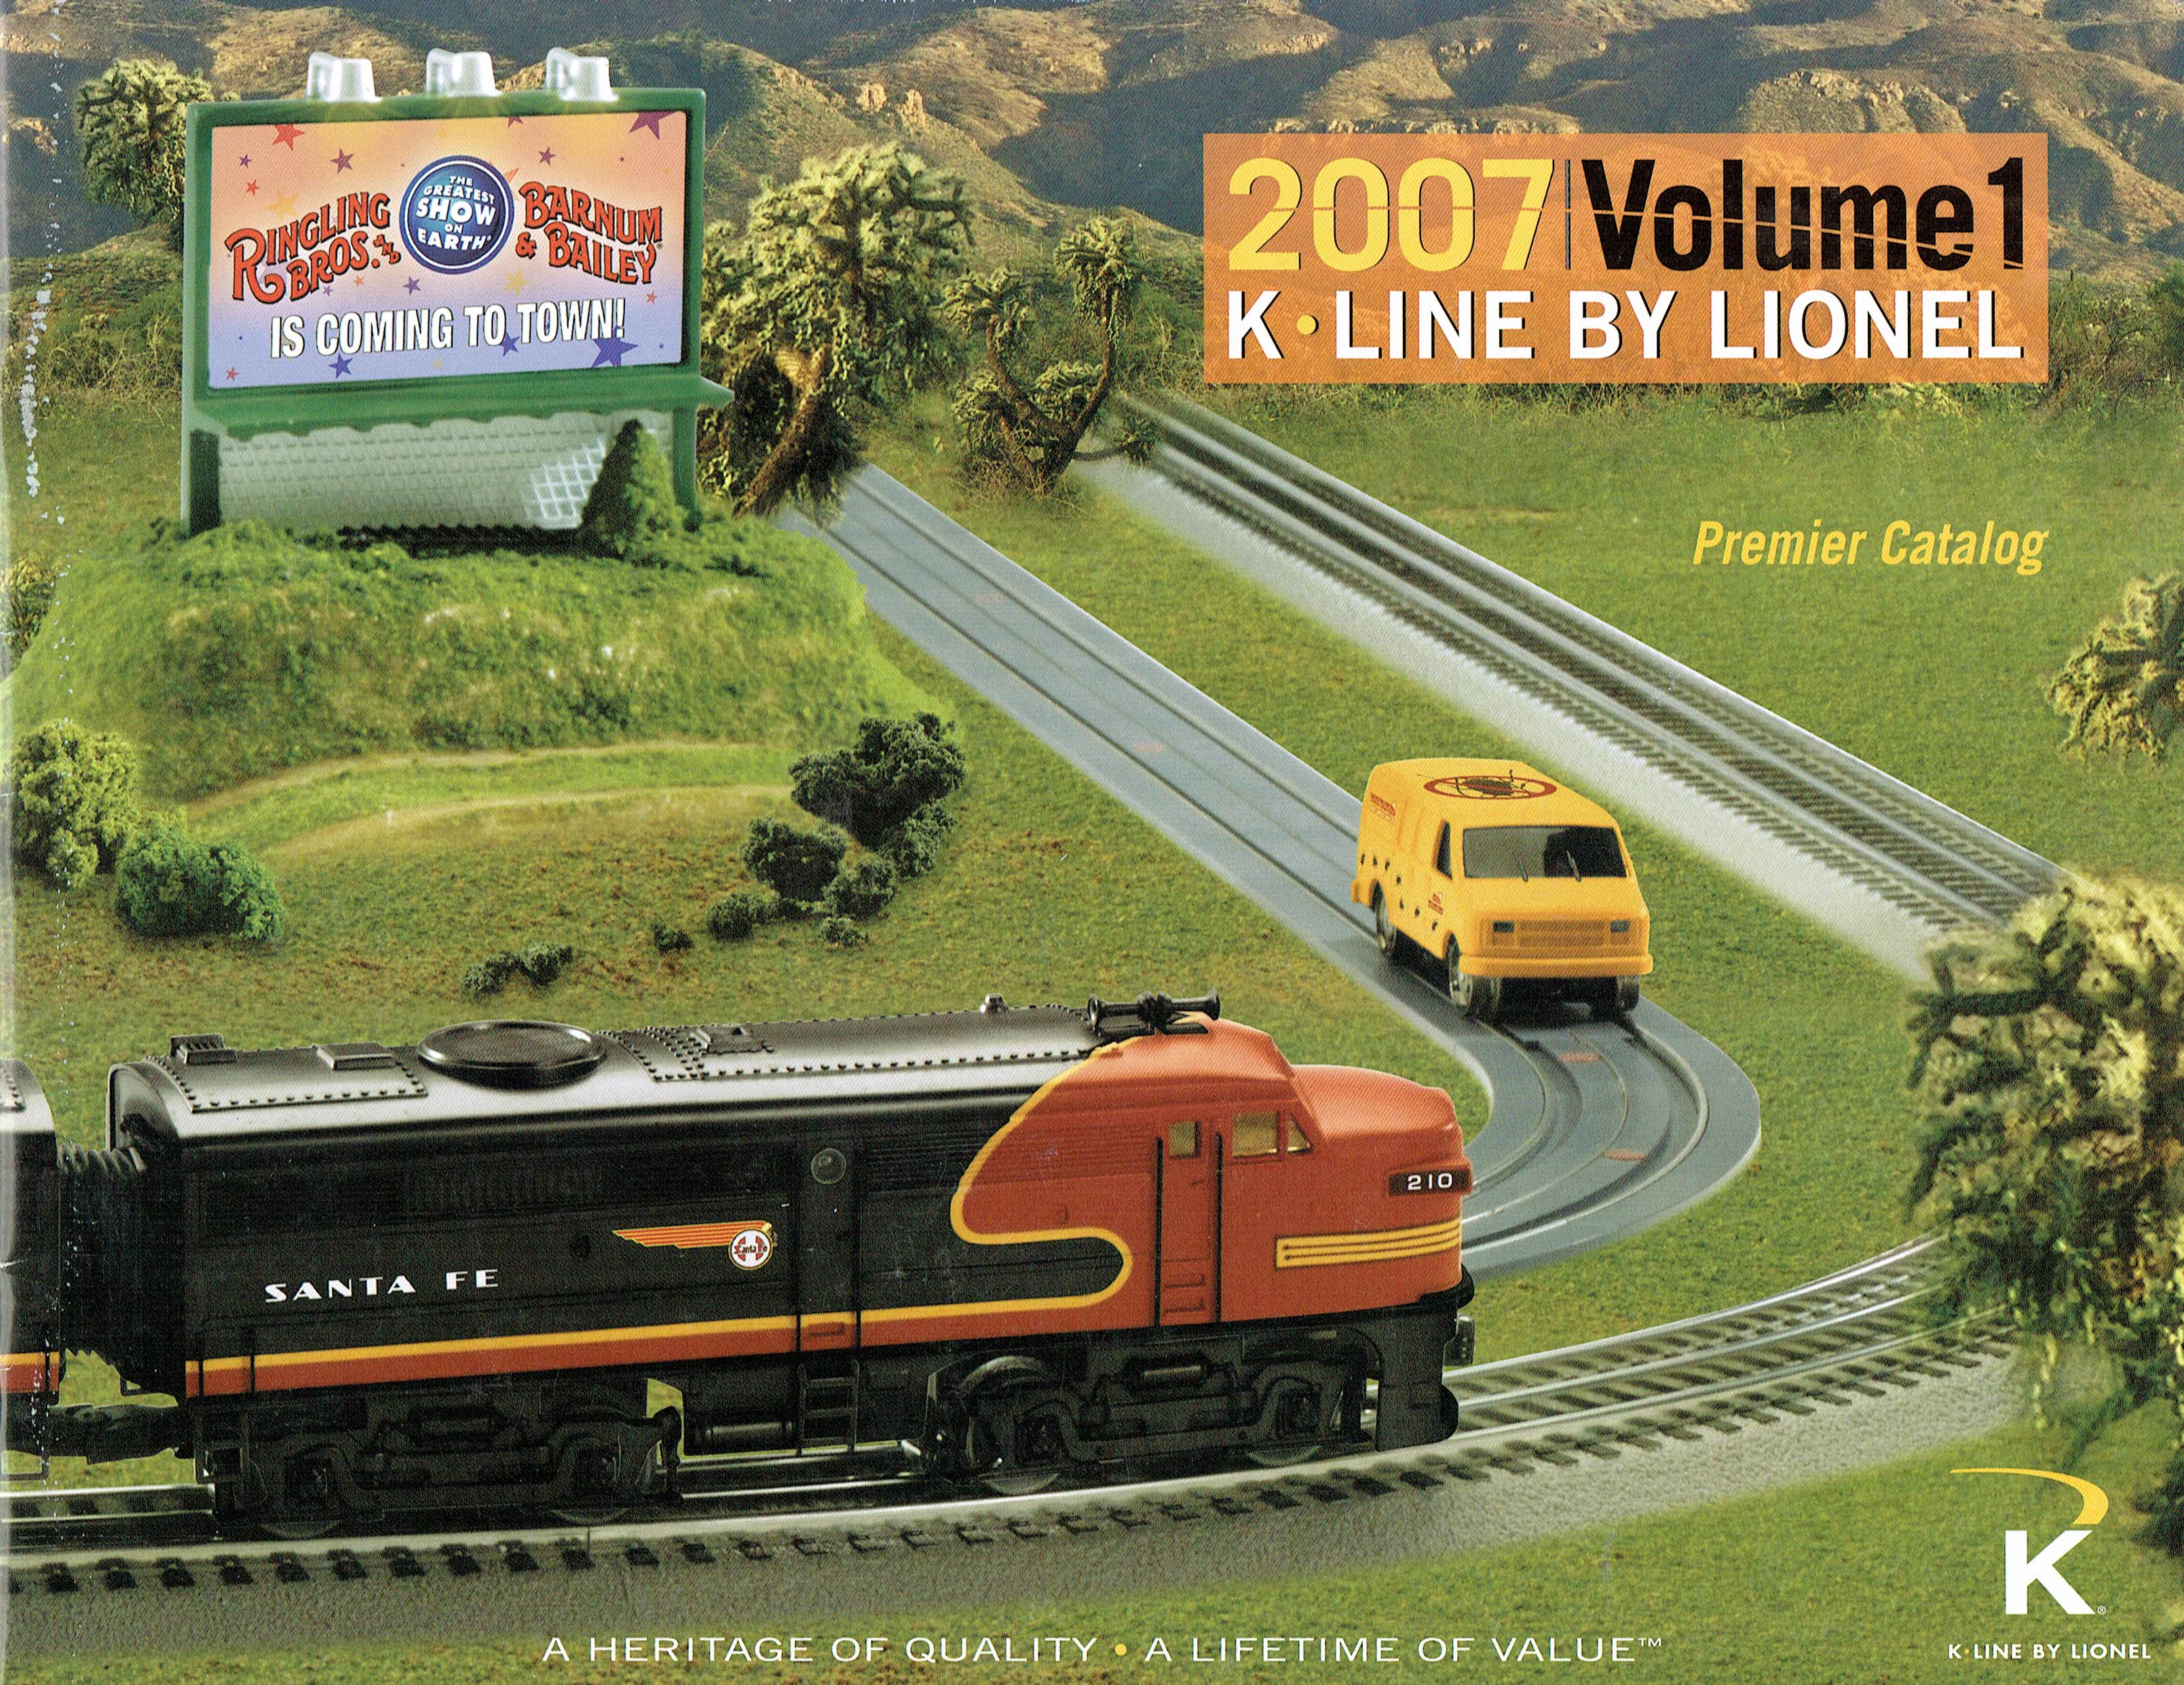 K-Line by Lionel 2007 Volume 1 "Premier Catalog" image